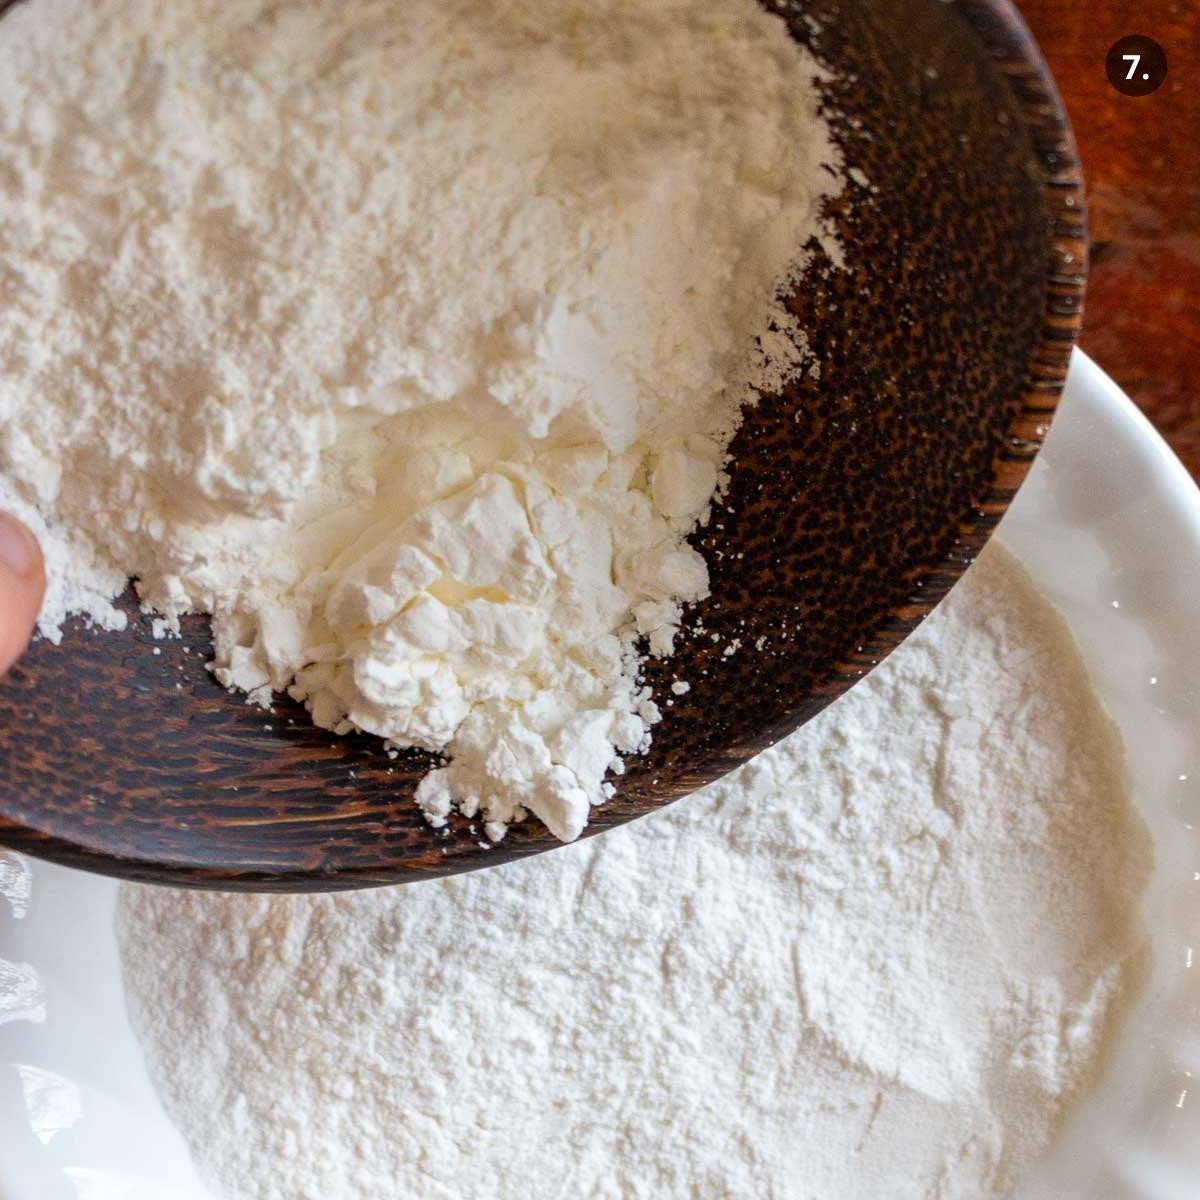 Cornstarch getting added to gluten-free rice flour.